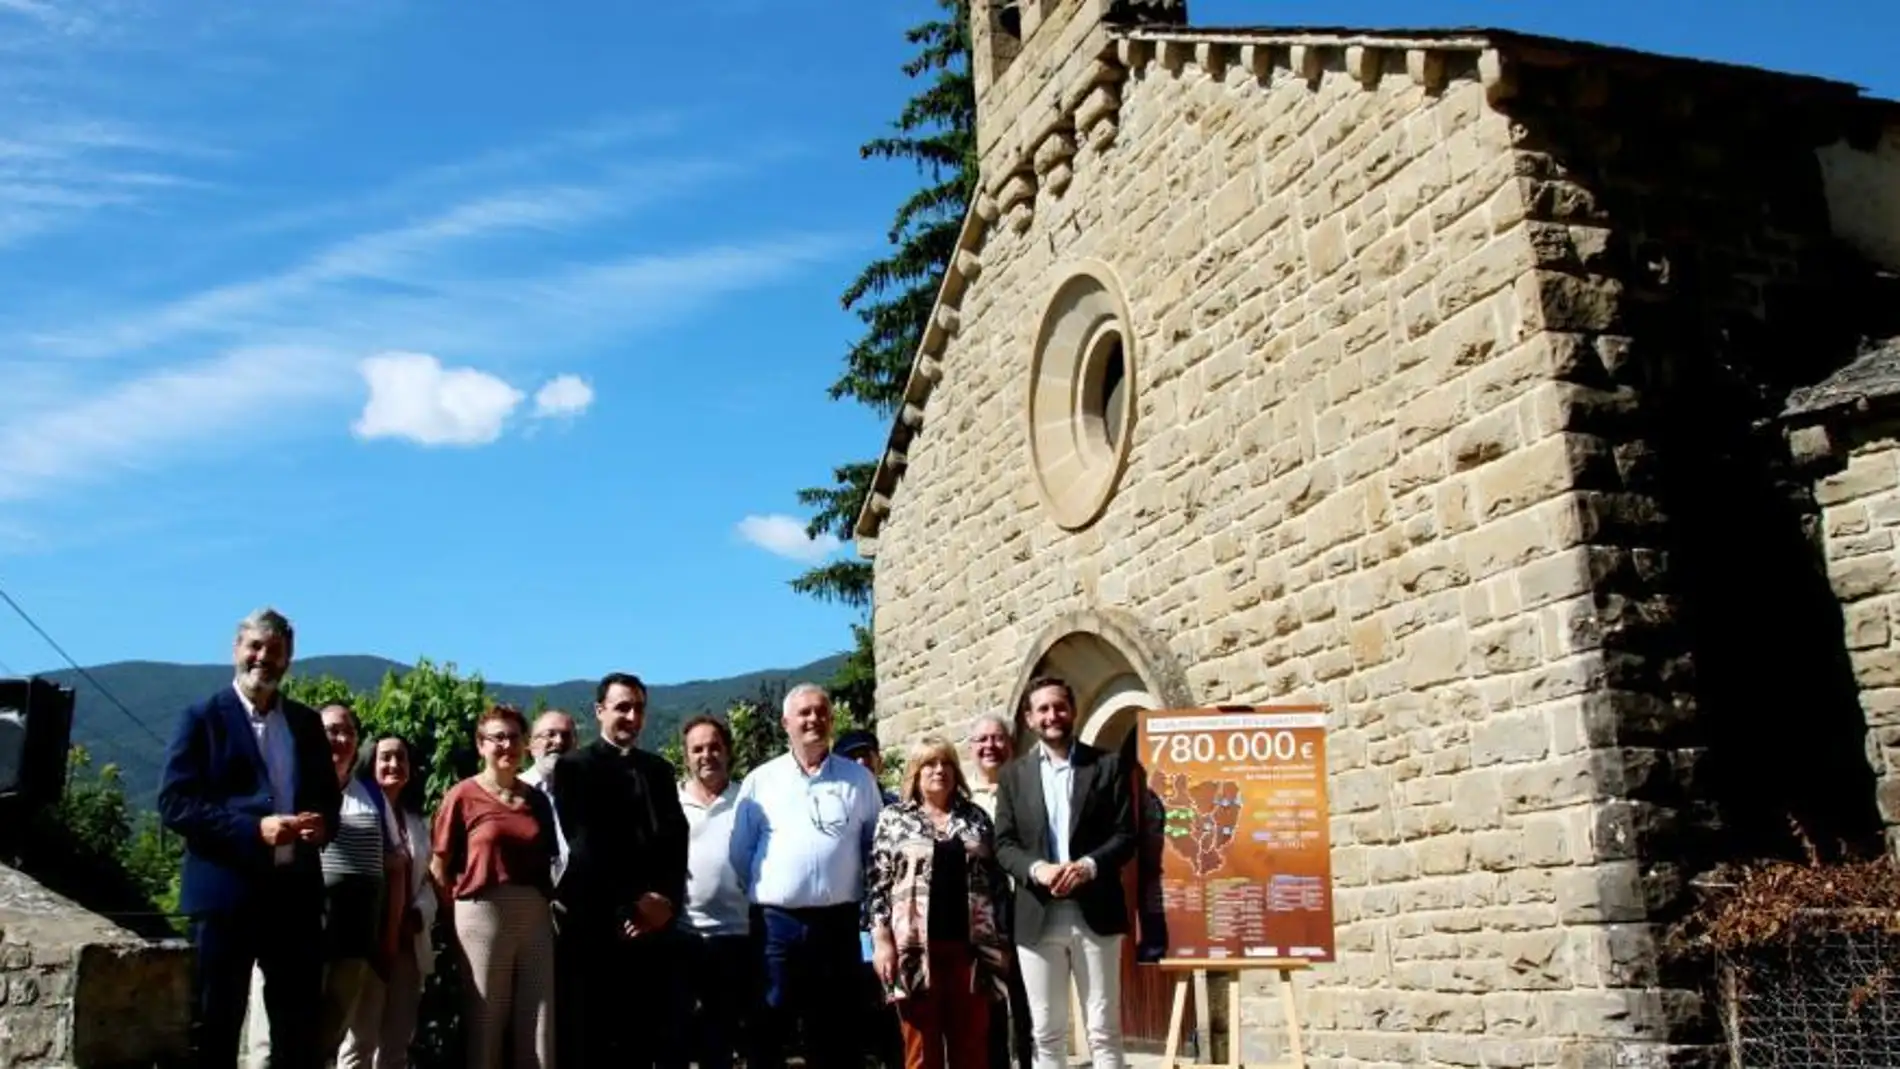 780.000 euros para mejorar 16 iglesias y ermitas de Huesca